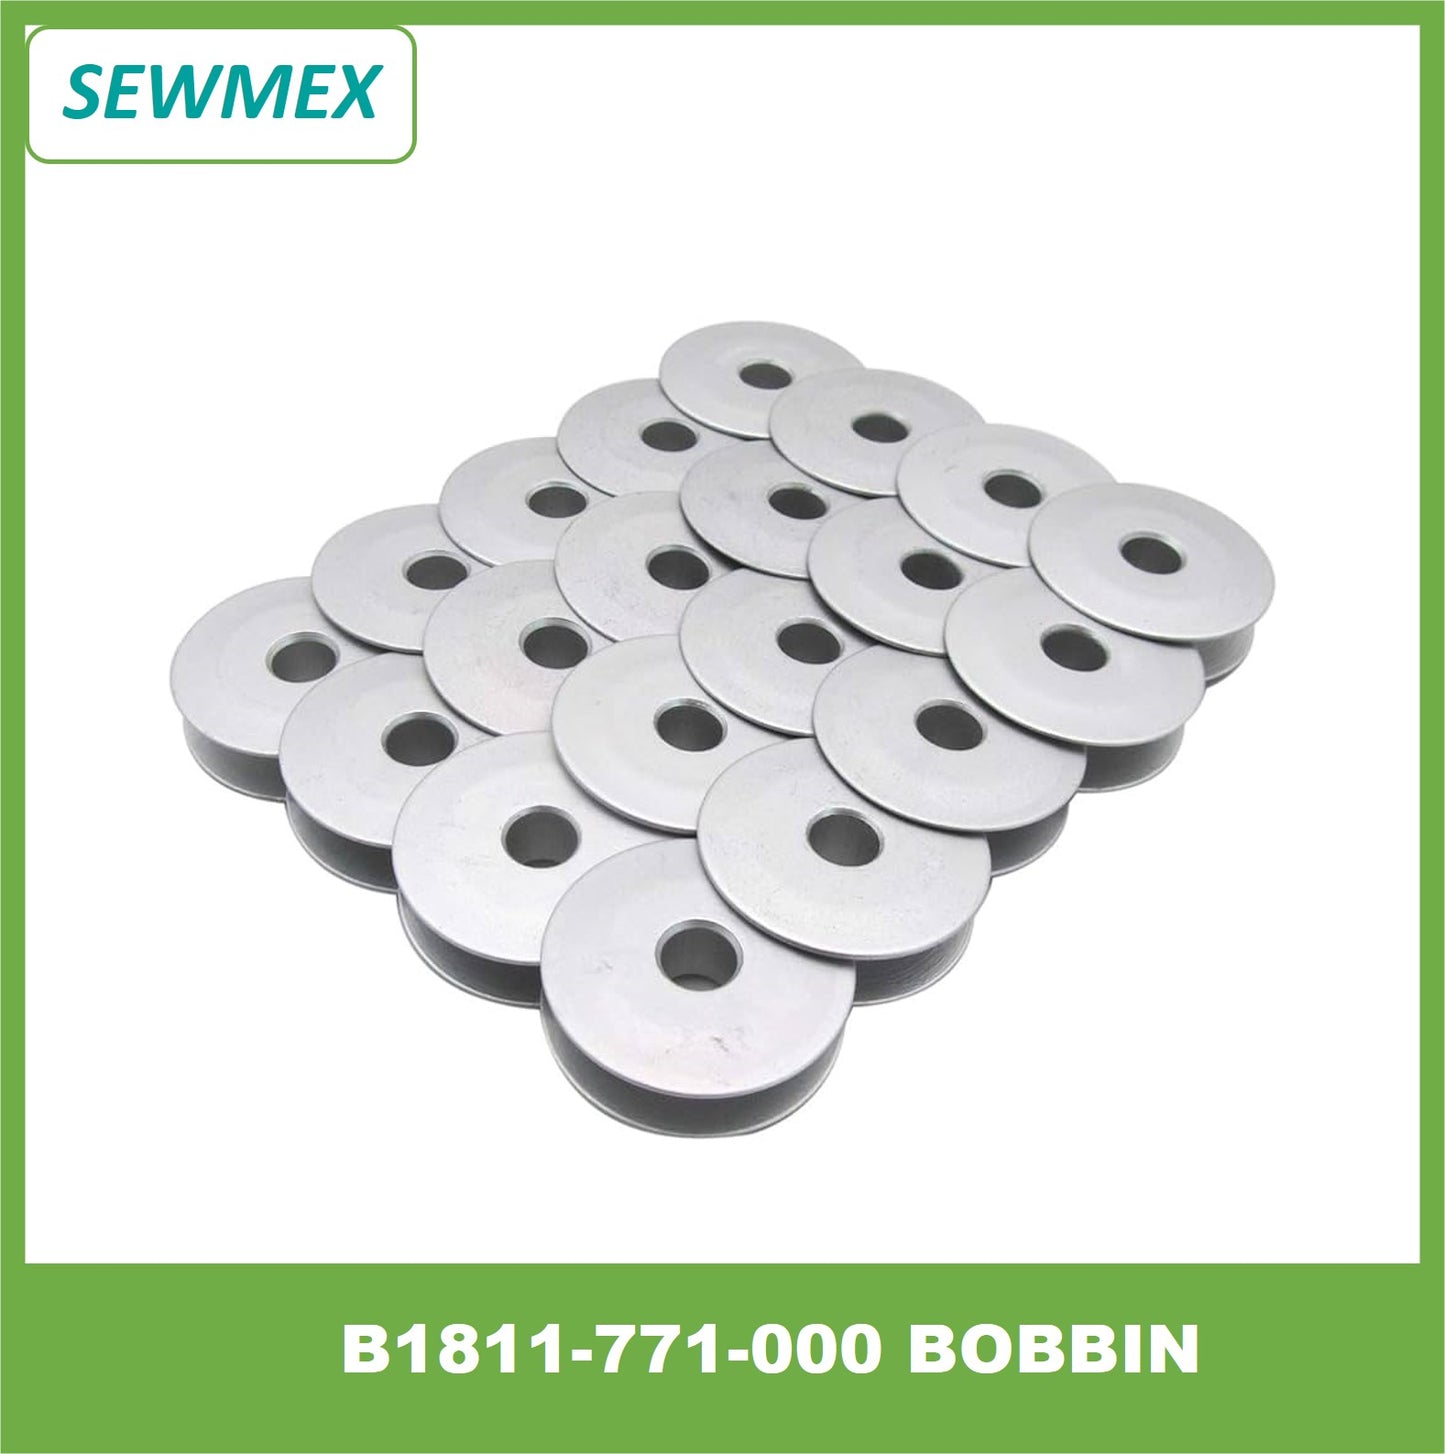 B1811-771-000 Aluminium Bobbin